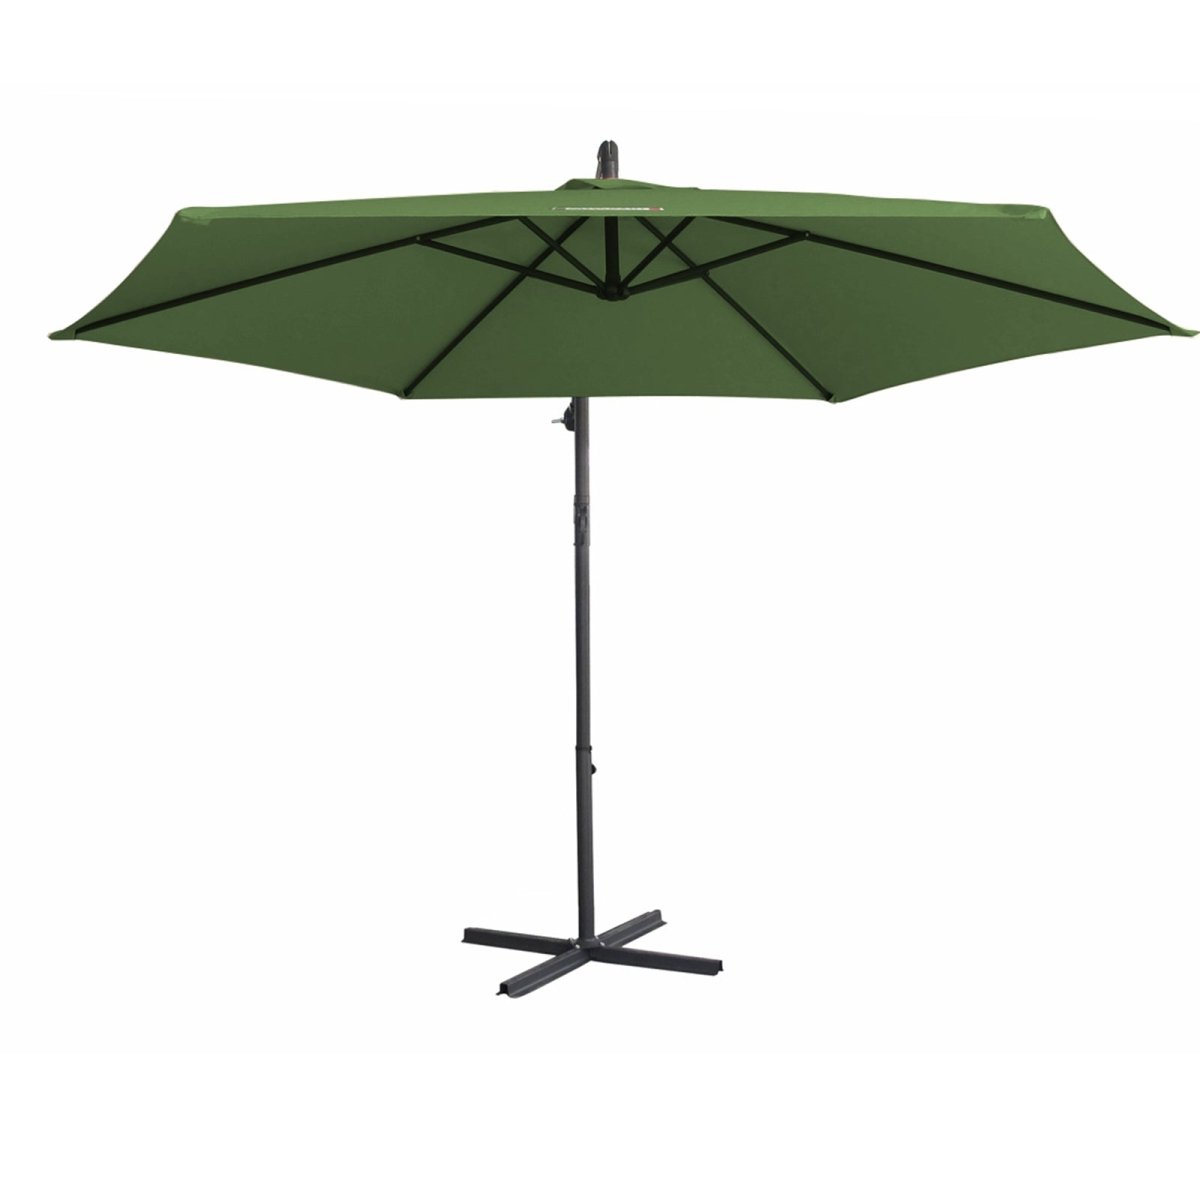 Milano 3M Outdoor Umbrella Cantilever With Protective Cover Patio Garden Shade - Green - Outdoor Immersion